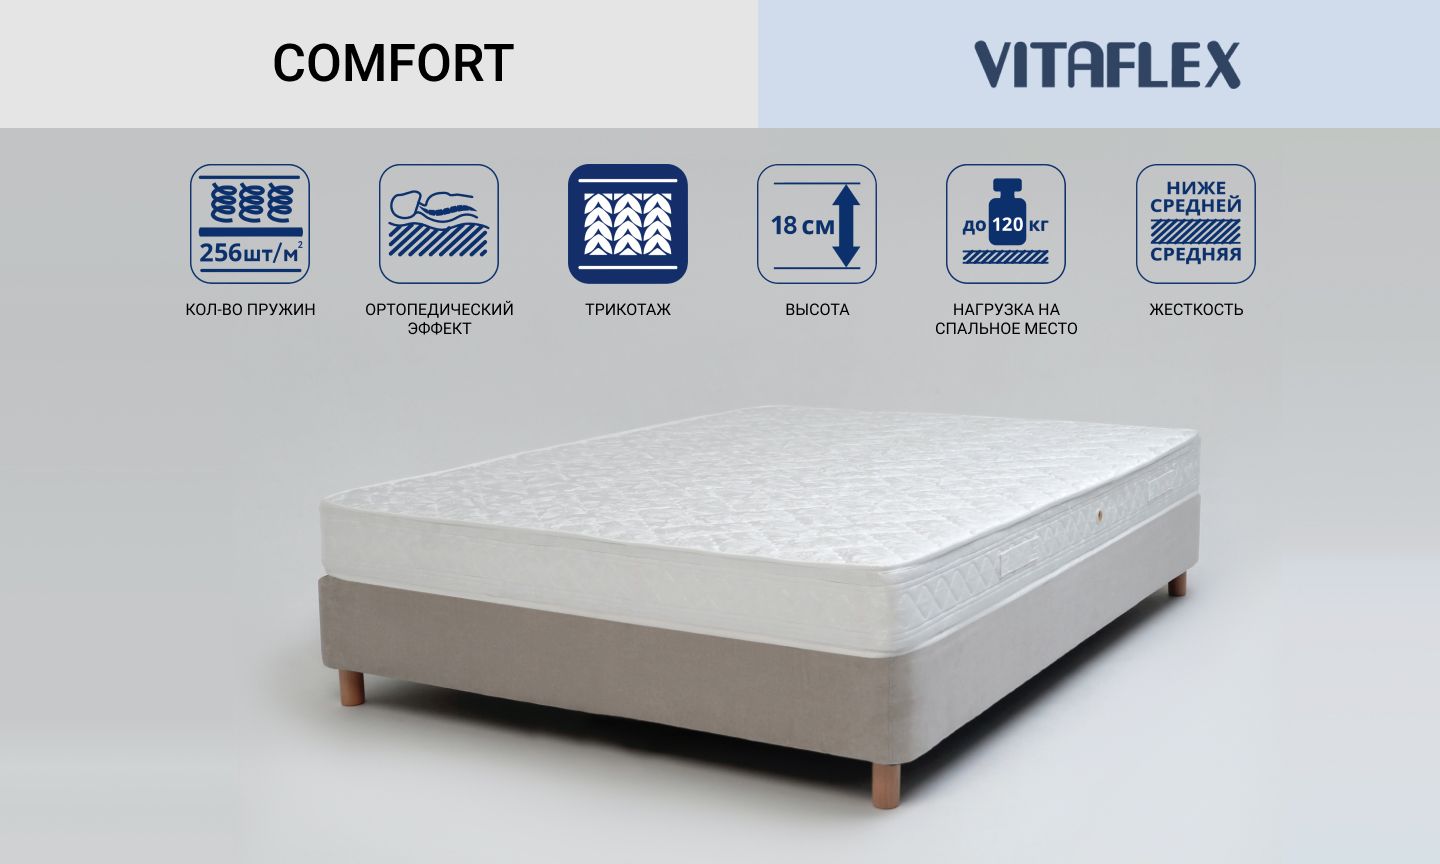 Двухсторонний матрас Vitaflex серии Comfort с независимыми пружинами